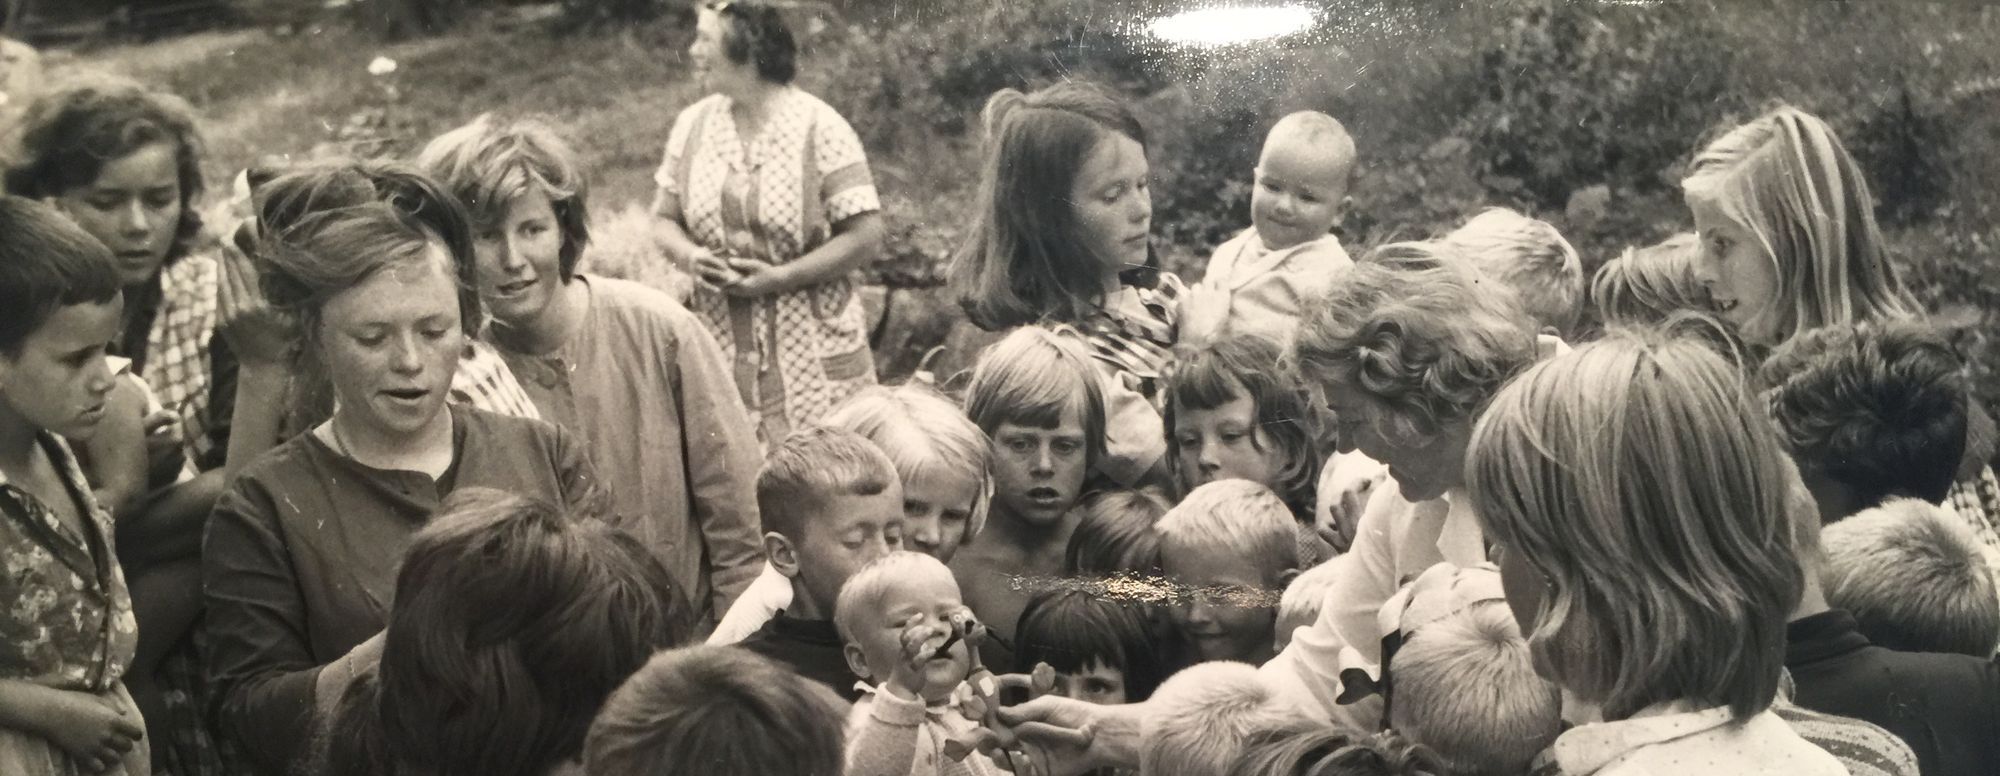 Historisk bilde i svart hvitt. Barn som er samlet rundt en leke.